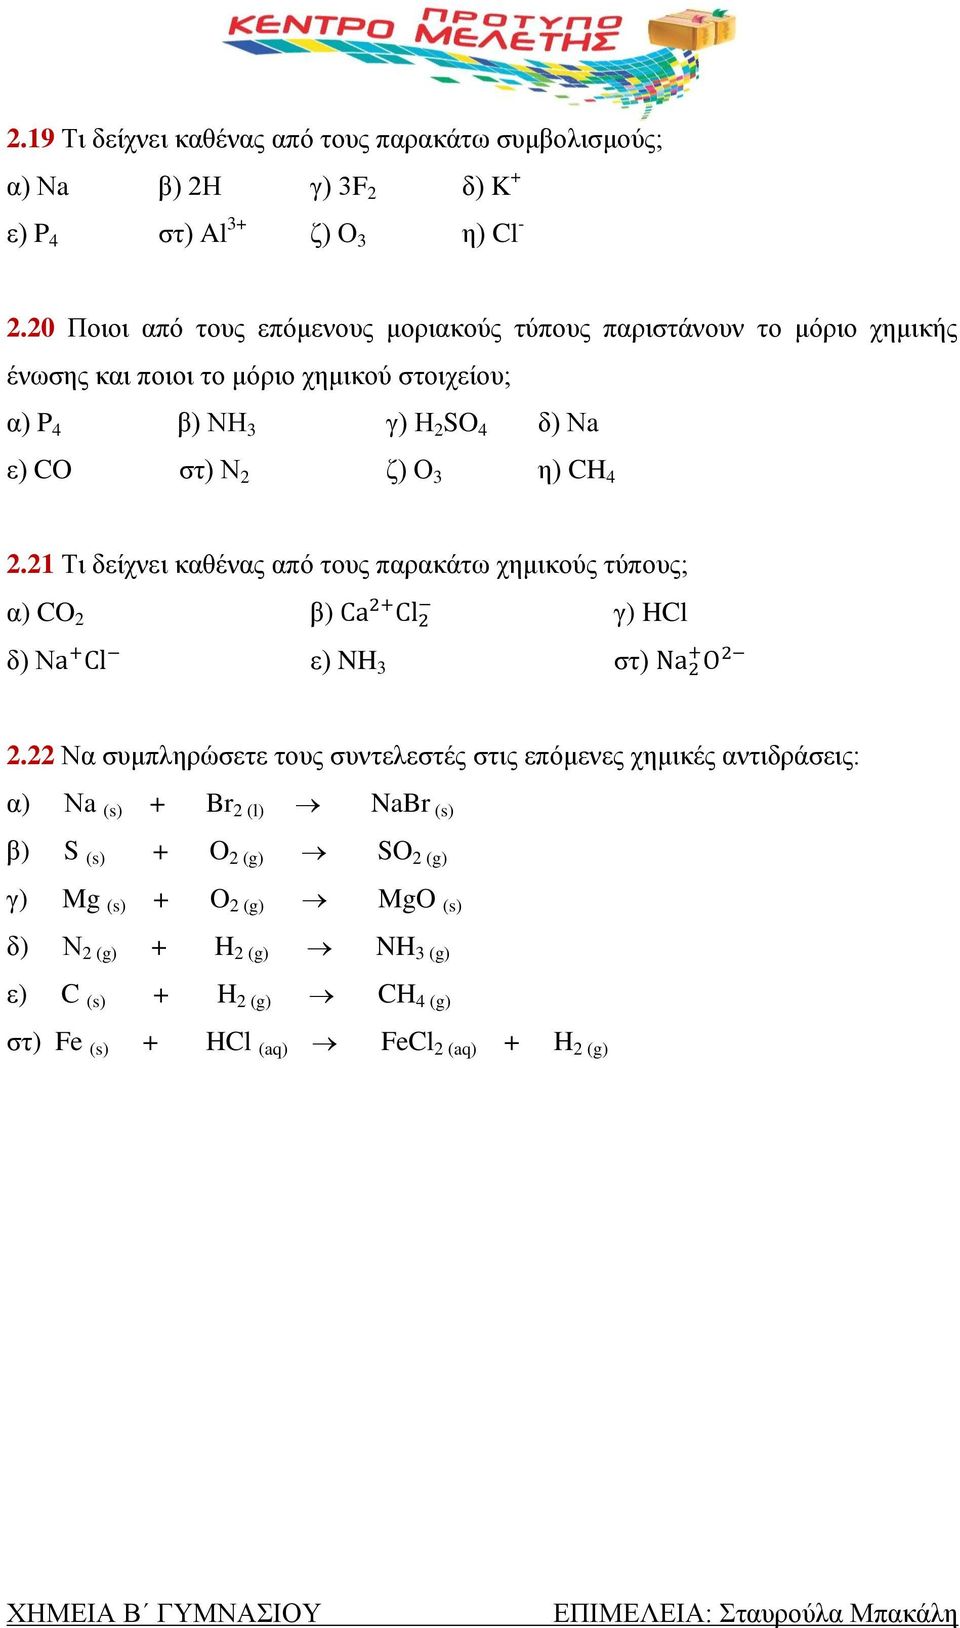 Ν 2 ζ) Ο 3 η) CH 4 2.21 Τι δείχνει καθένας από τους παρακάτω χημικούς τύπους; α) CO 2 β) γ) HCl δ) Ν ε) NH 3 στ) 2.